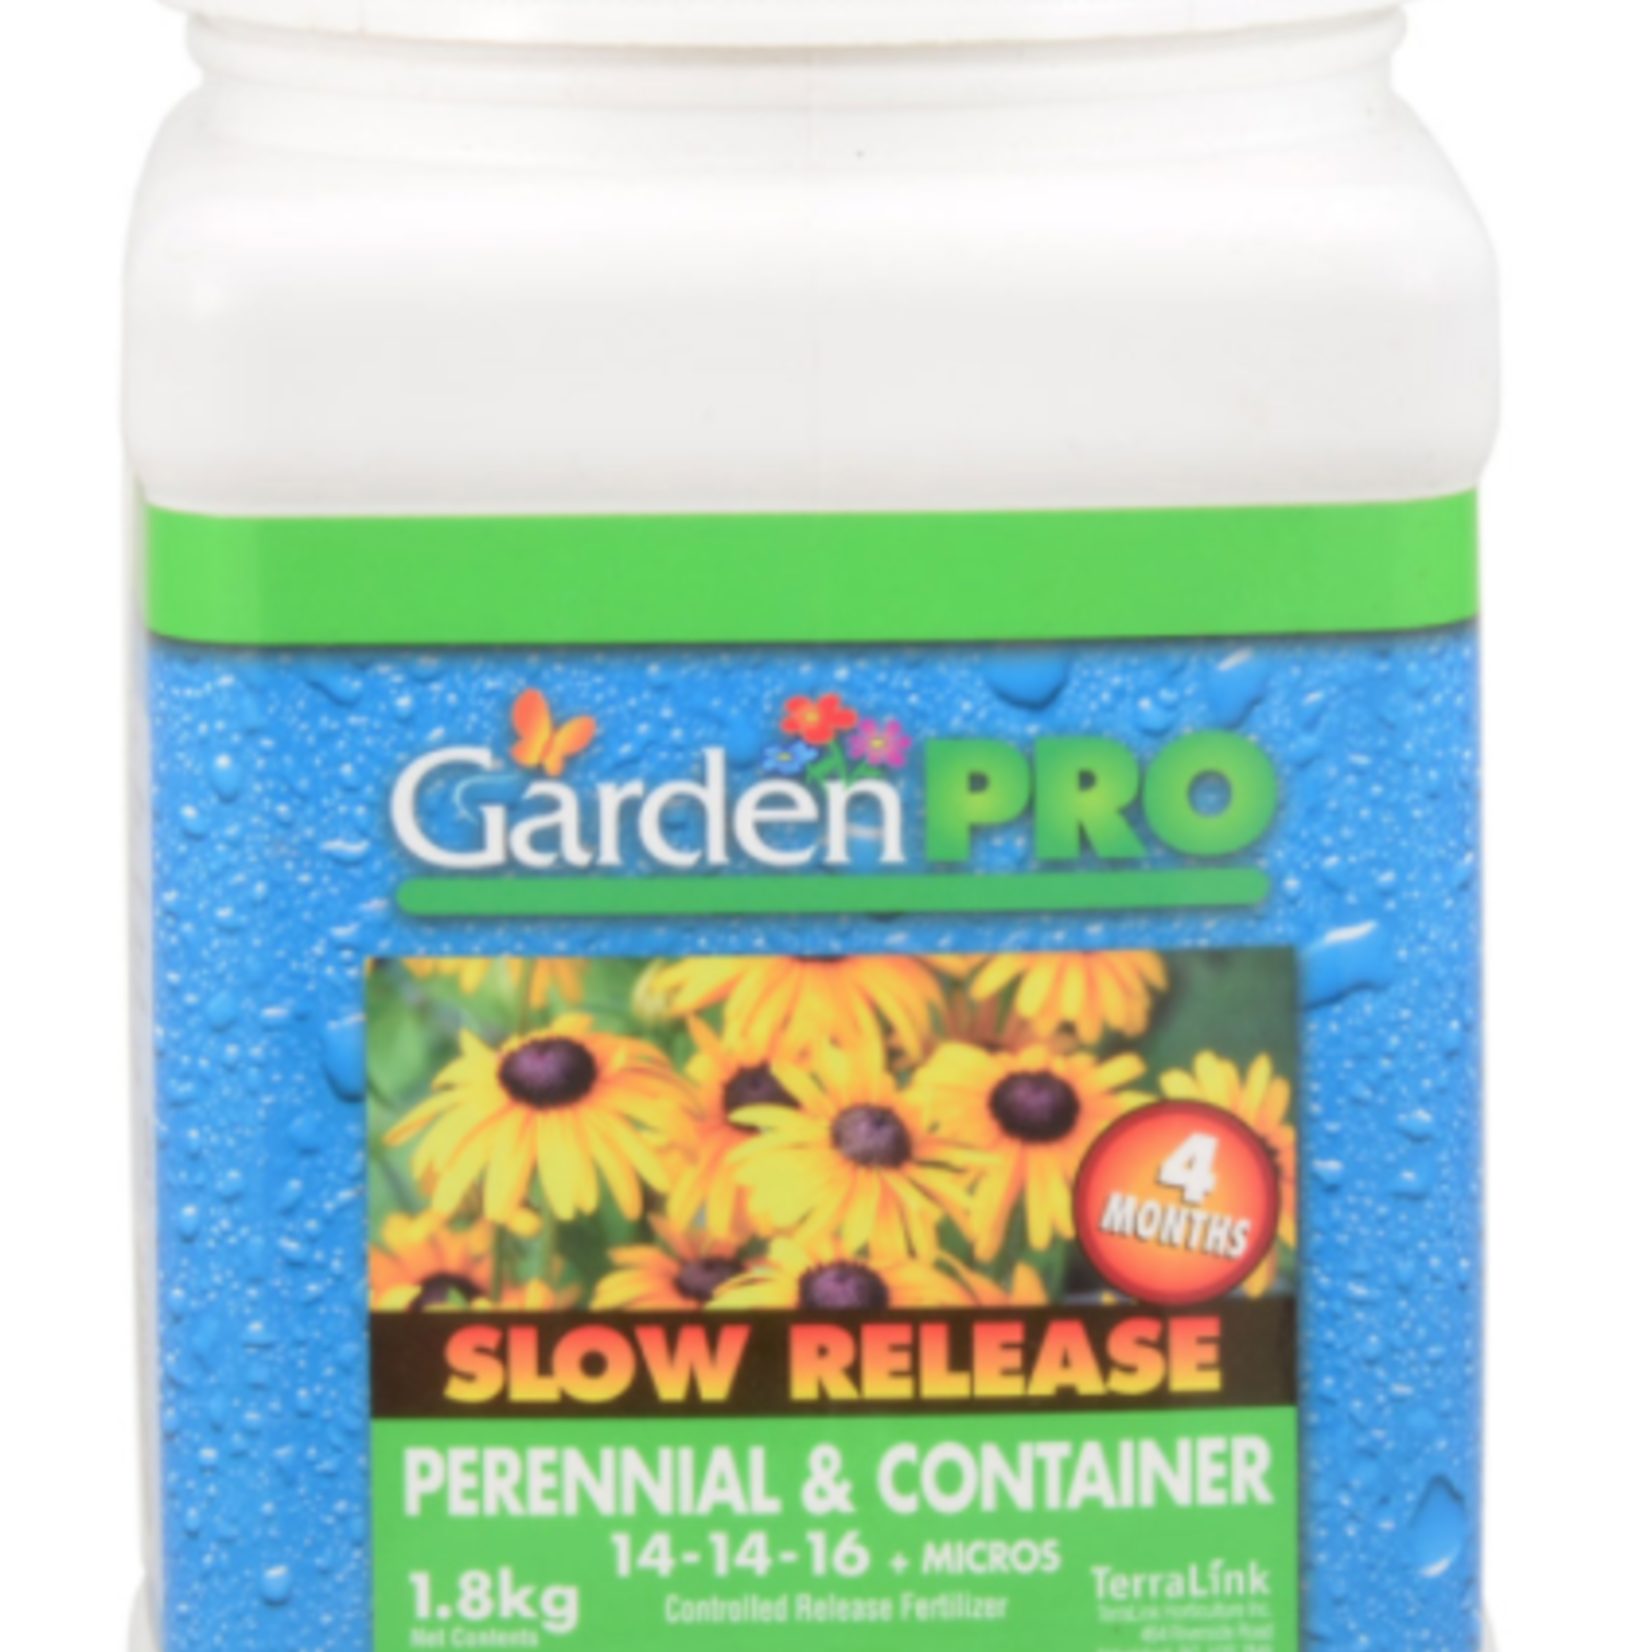 Garden Pro Slow Release 14-14-16 1.8kg